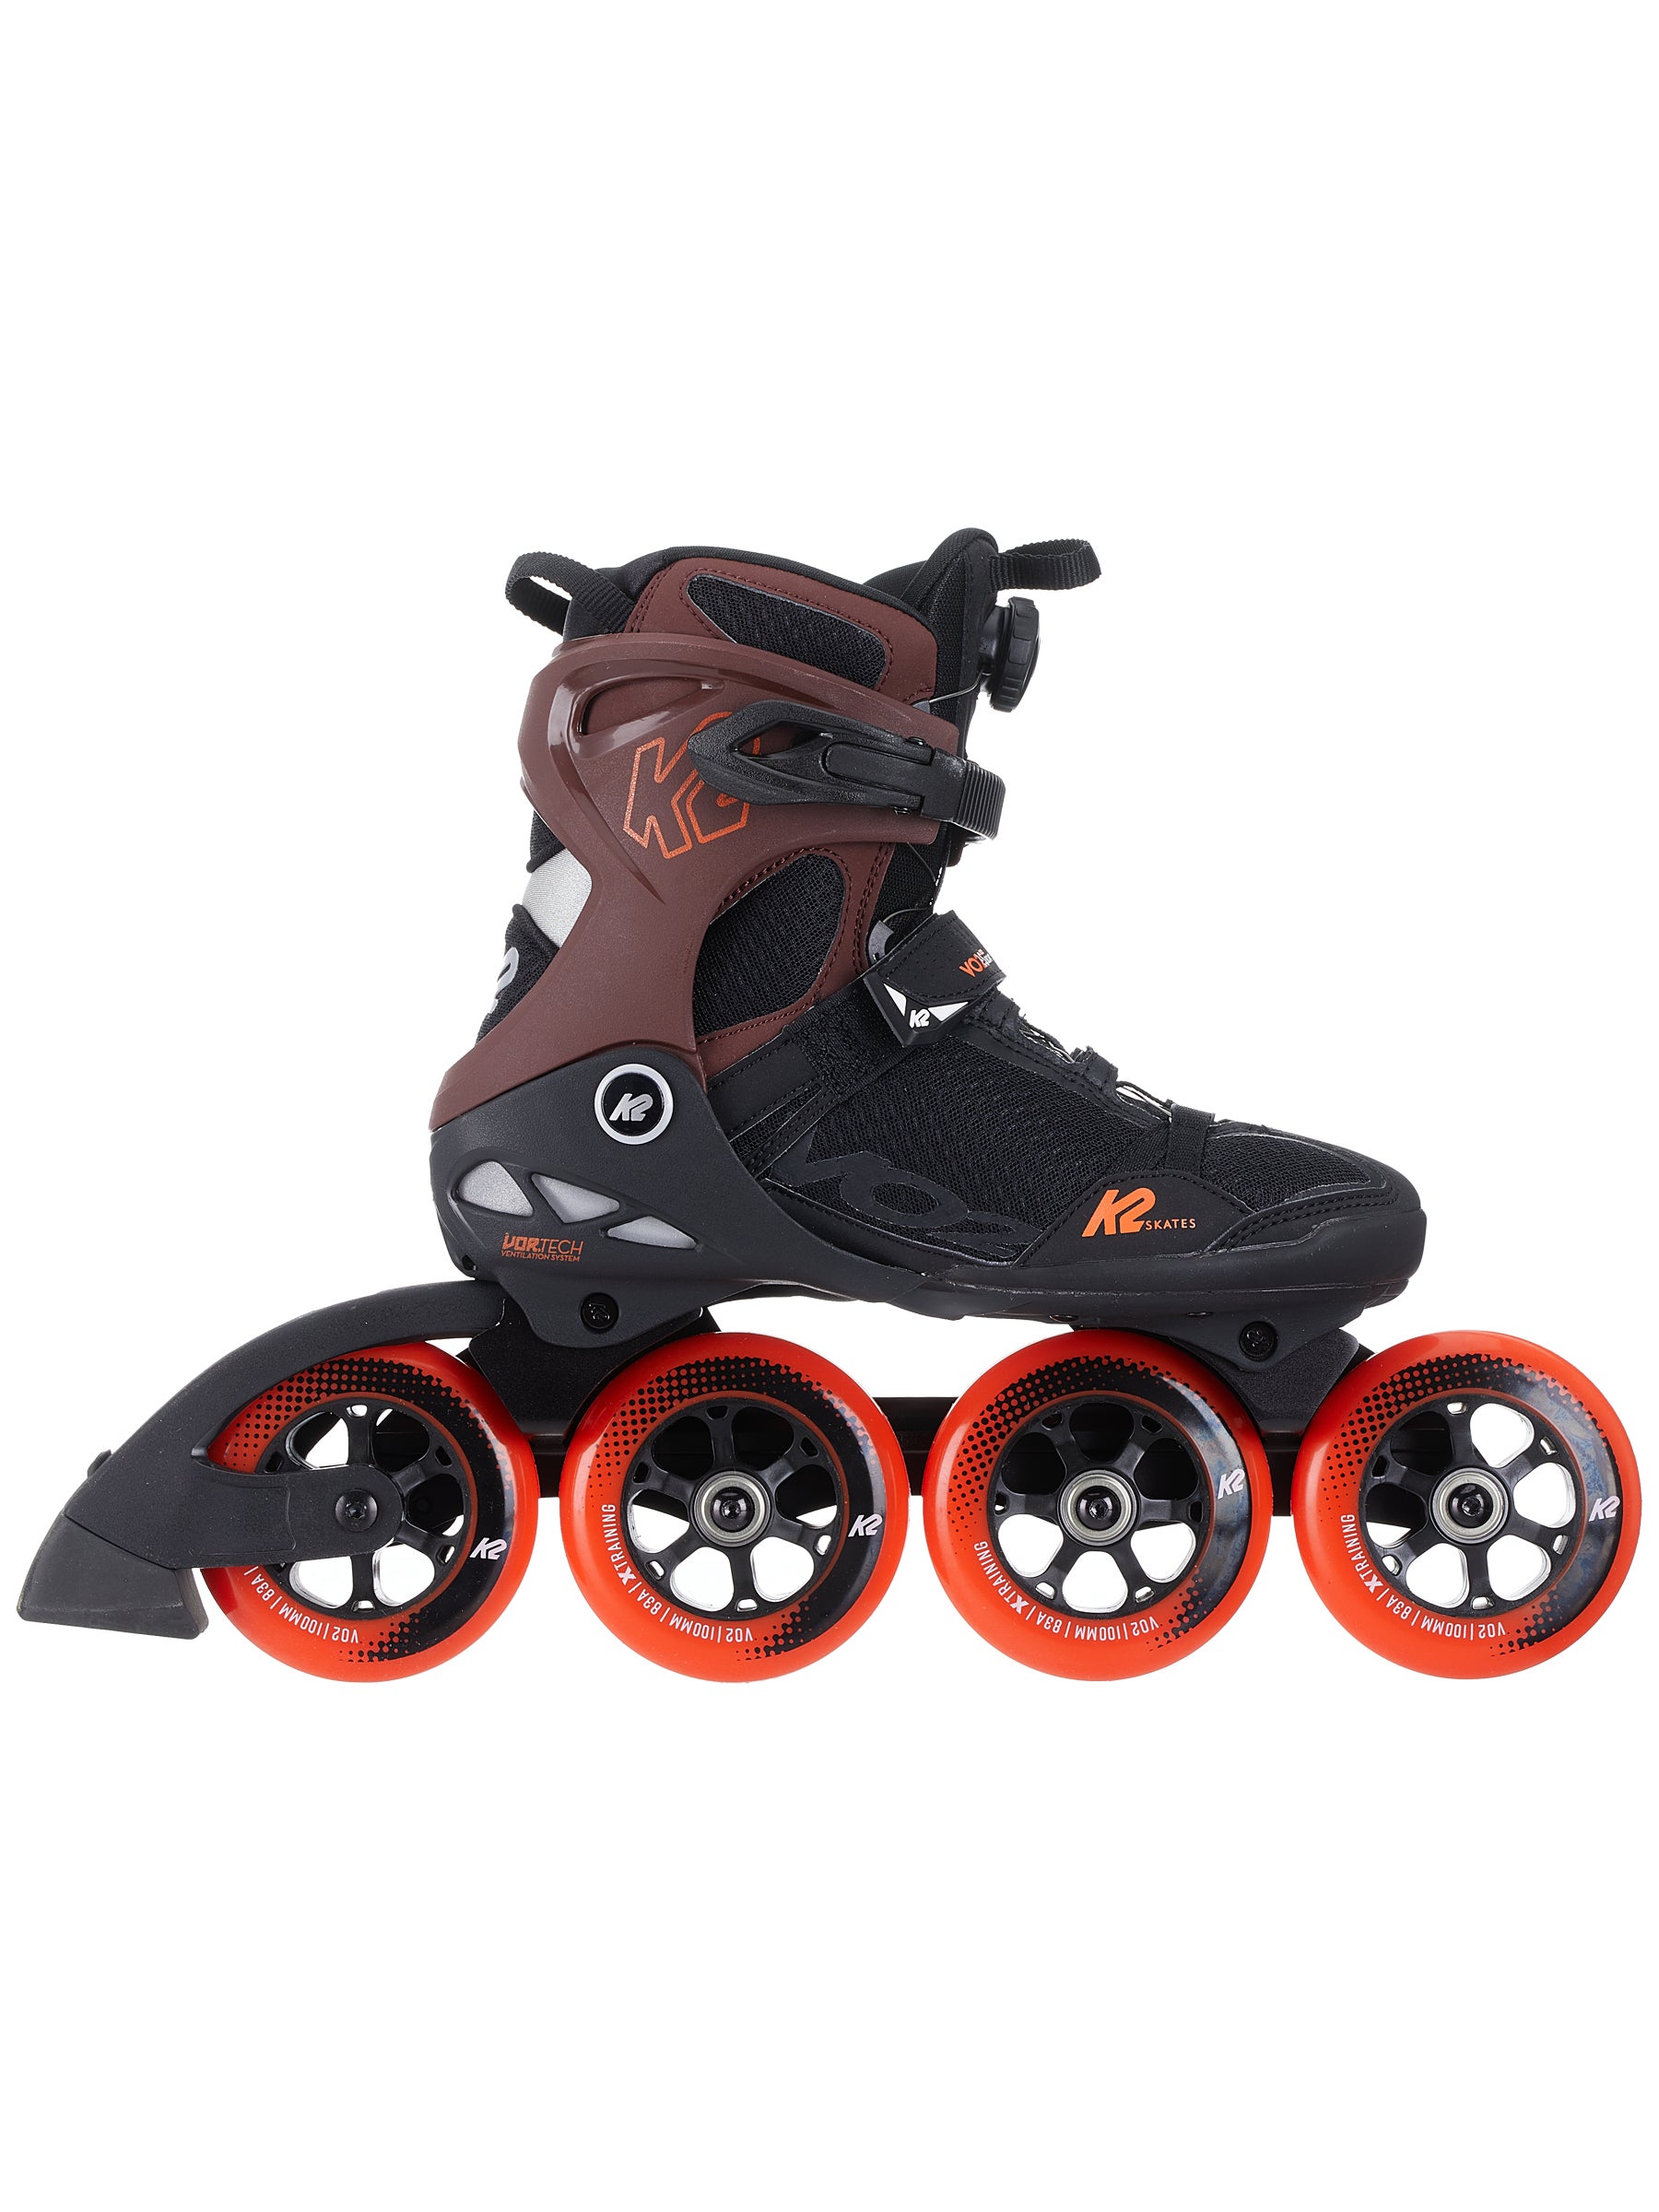 K2 VO2 S 100 Boa Inline Skates Inliner Men Roller Skating black red 30D0150 